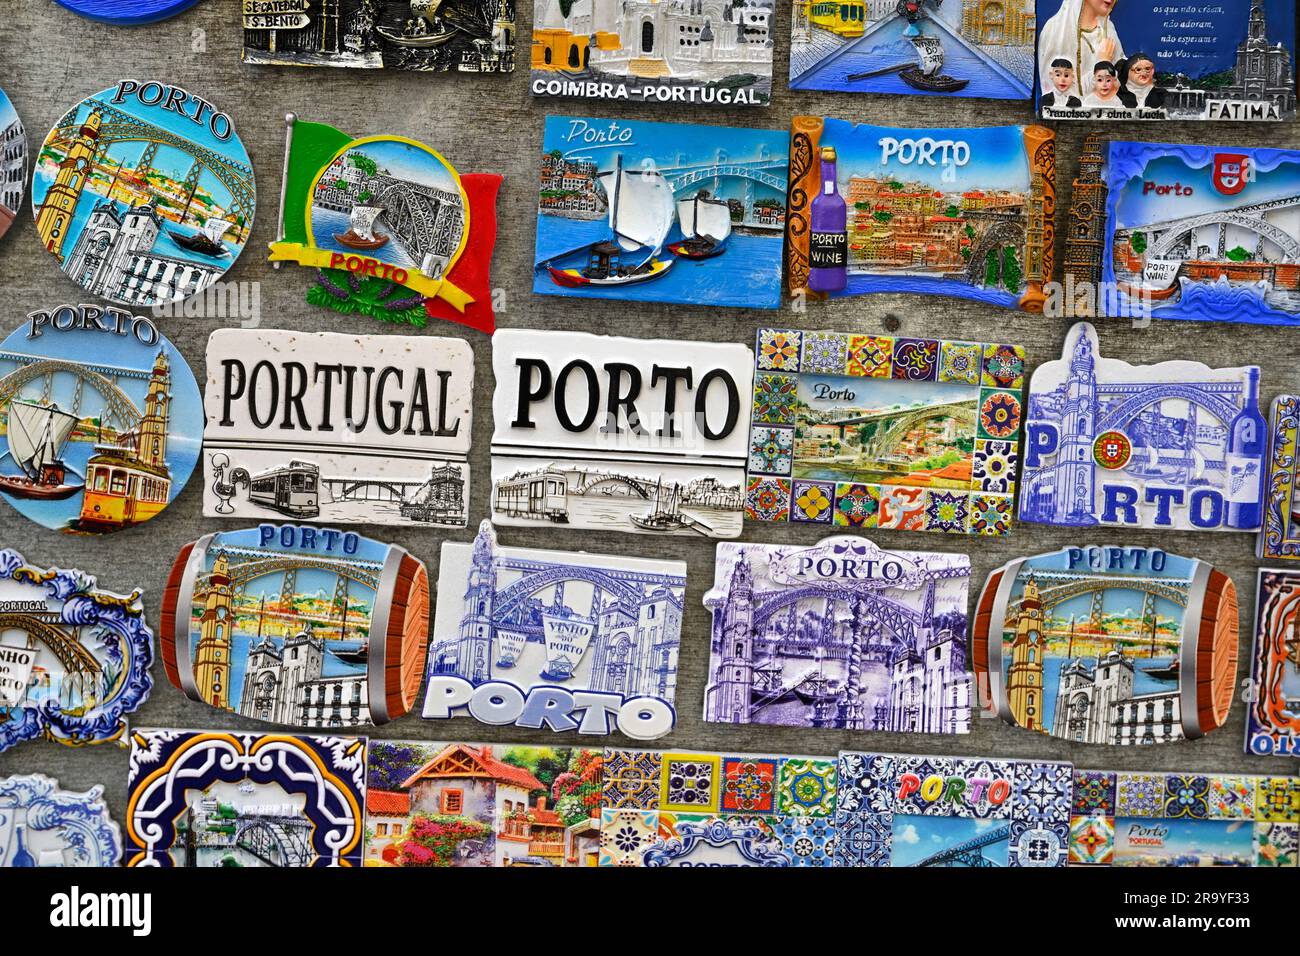 Exposition souvenir touristique de carreaux de céramique colorés pour le Portugal, Porto à vendre, exposition de plusieurs articles Banque D'Images